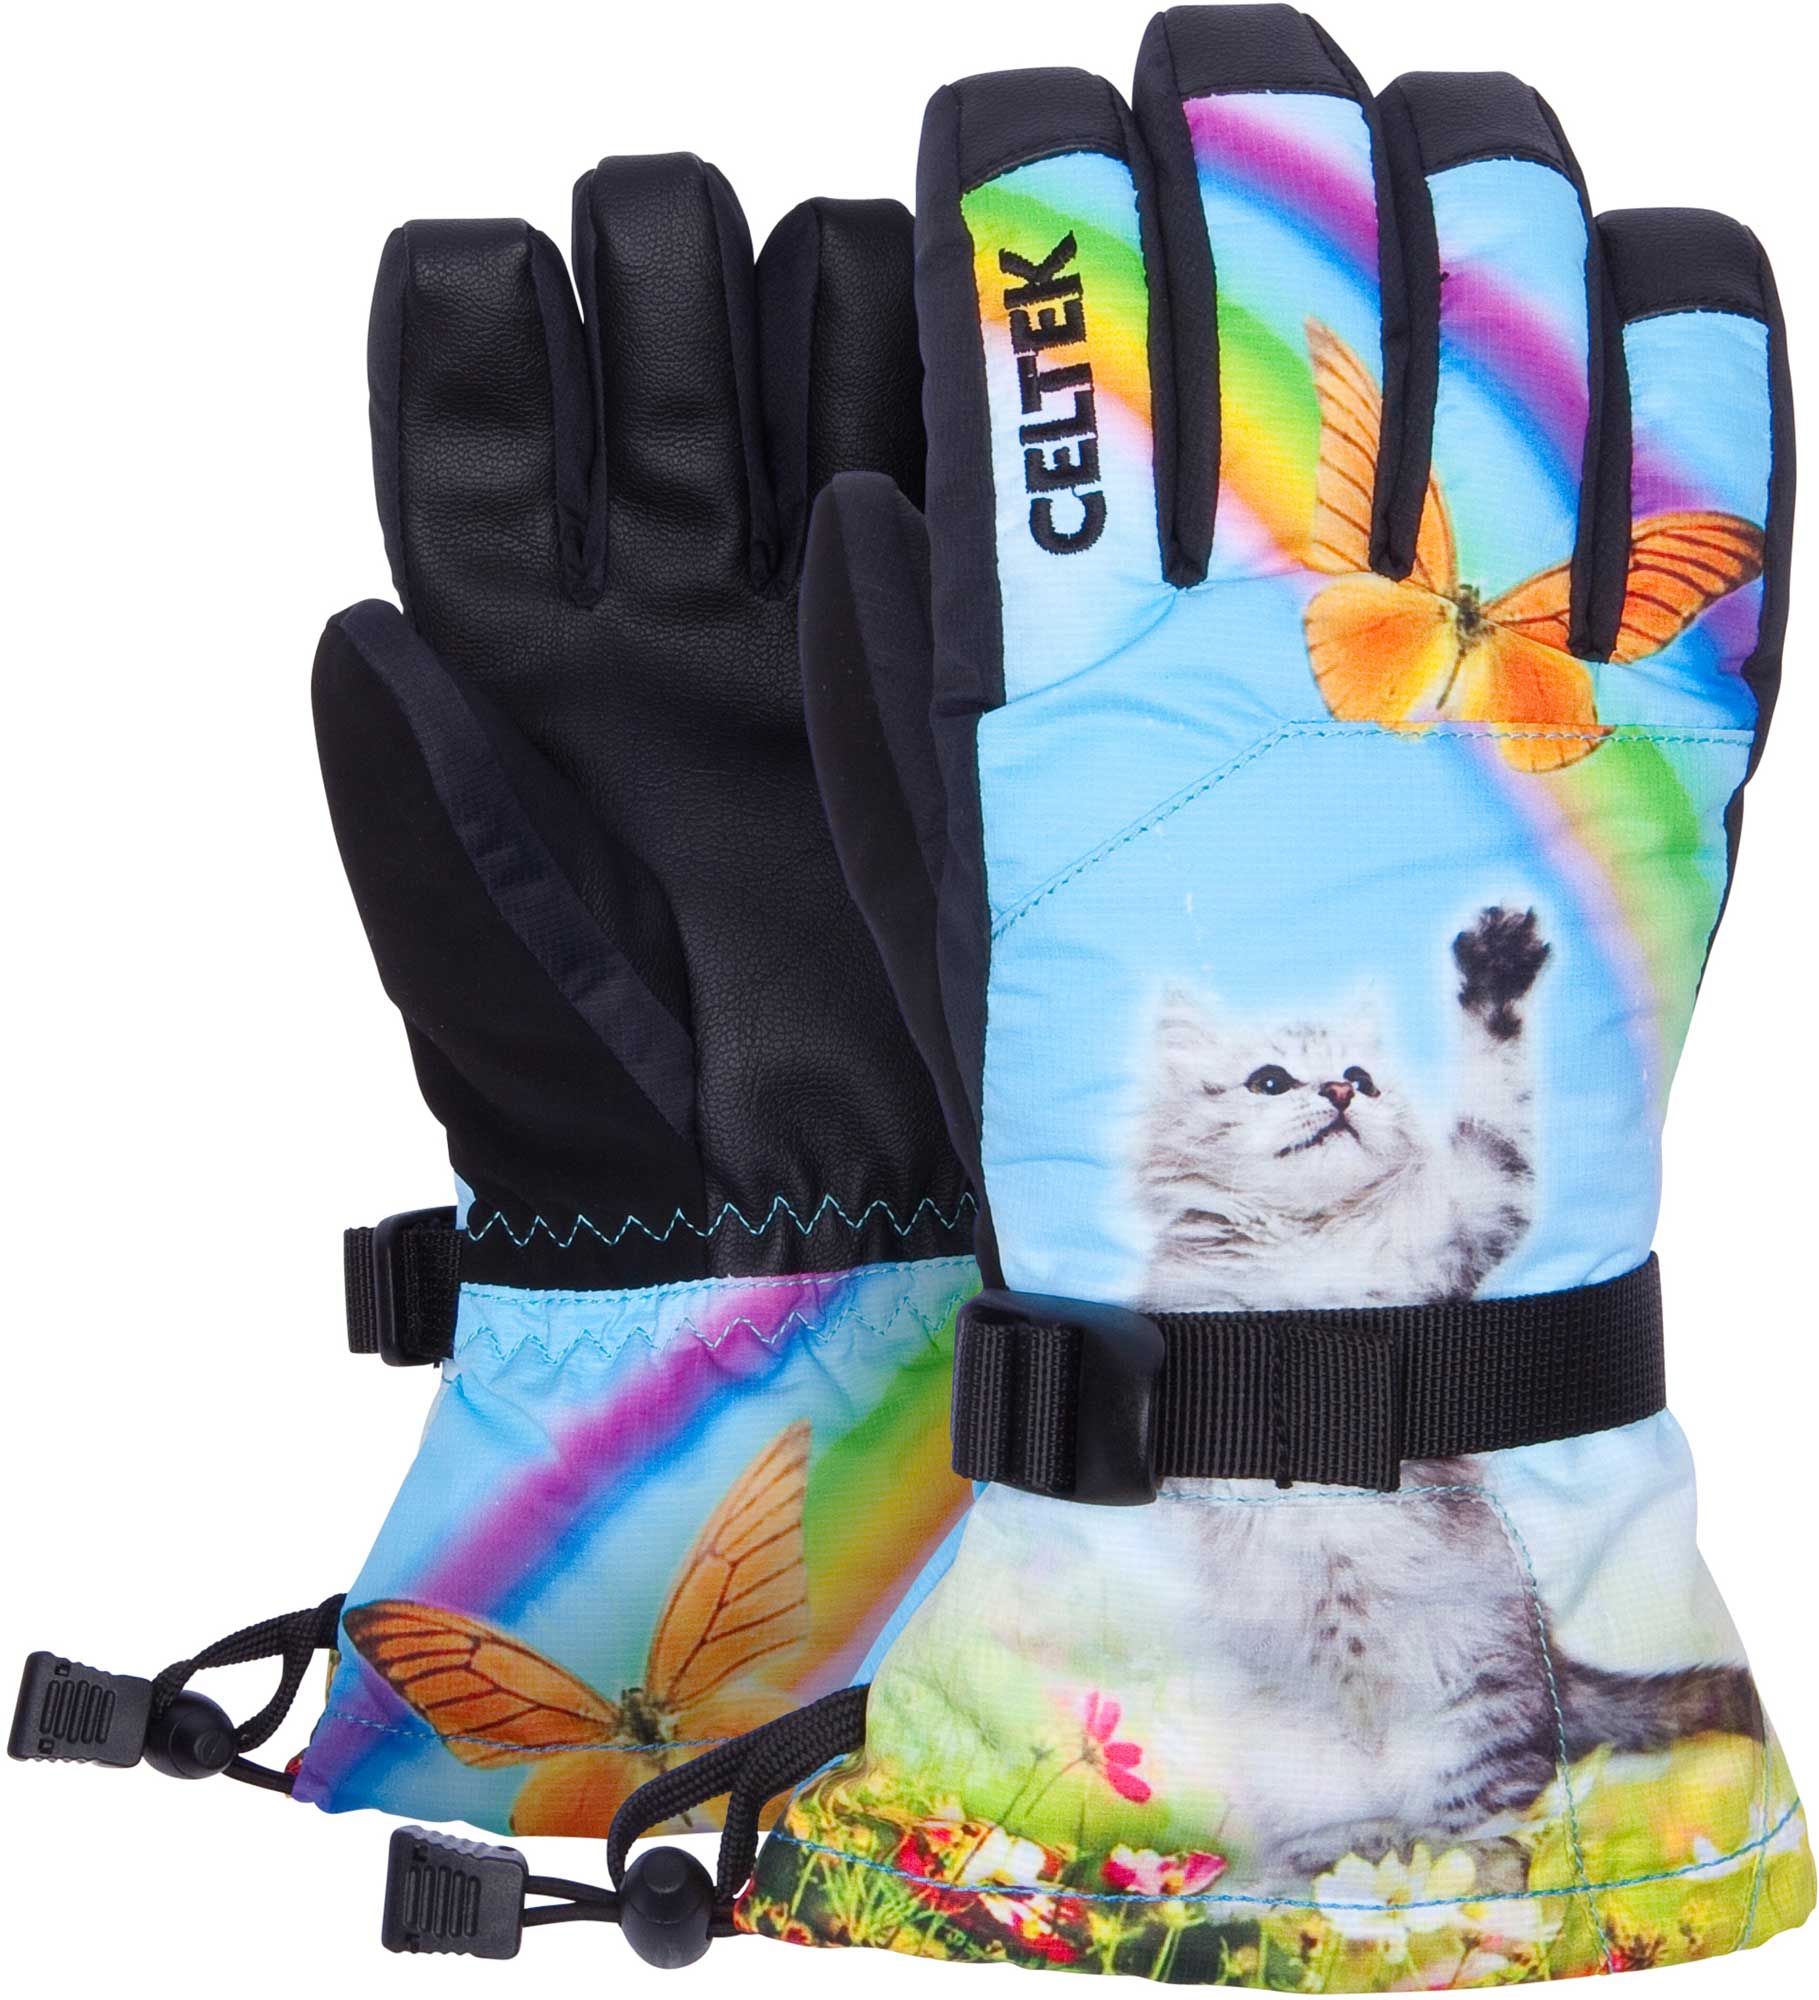 Kids’ gloves